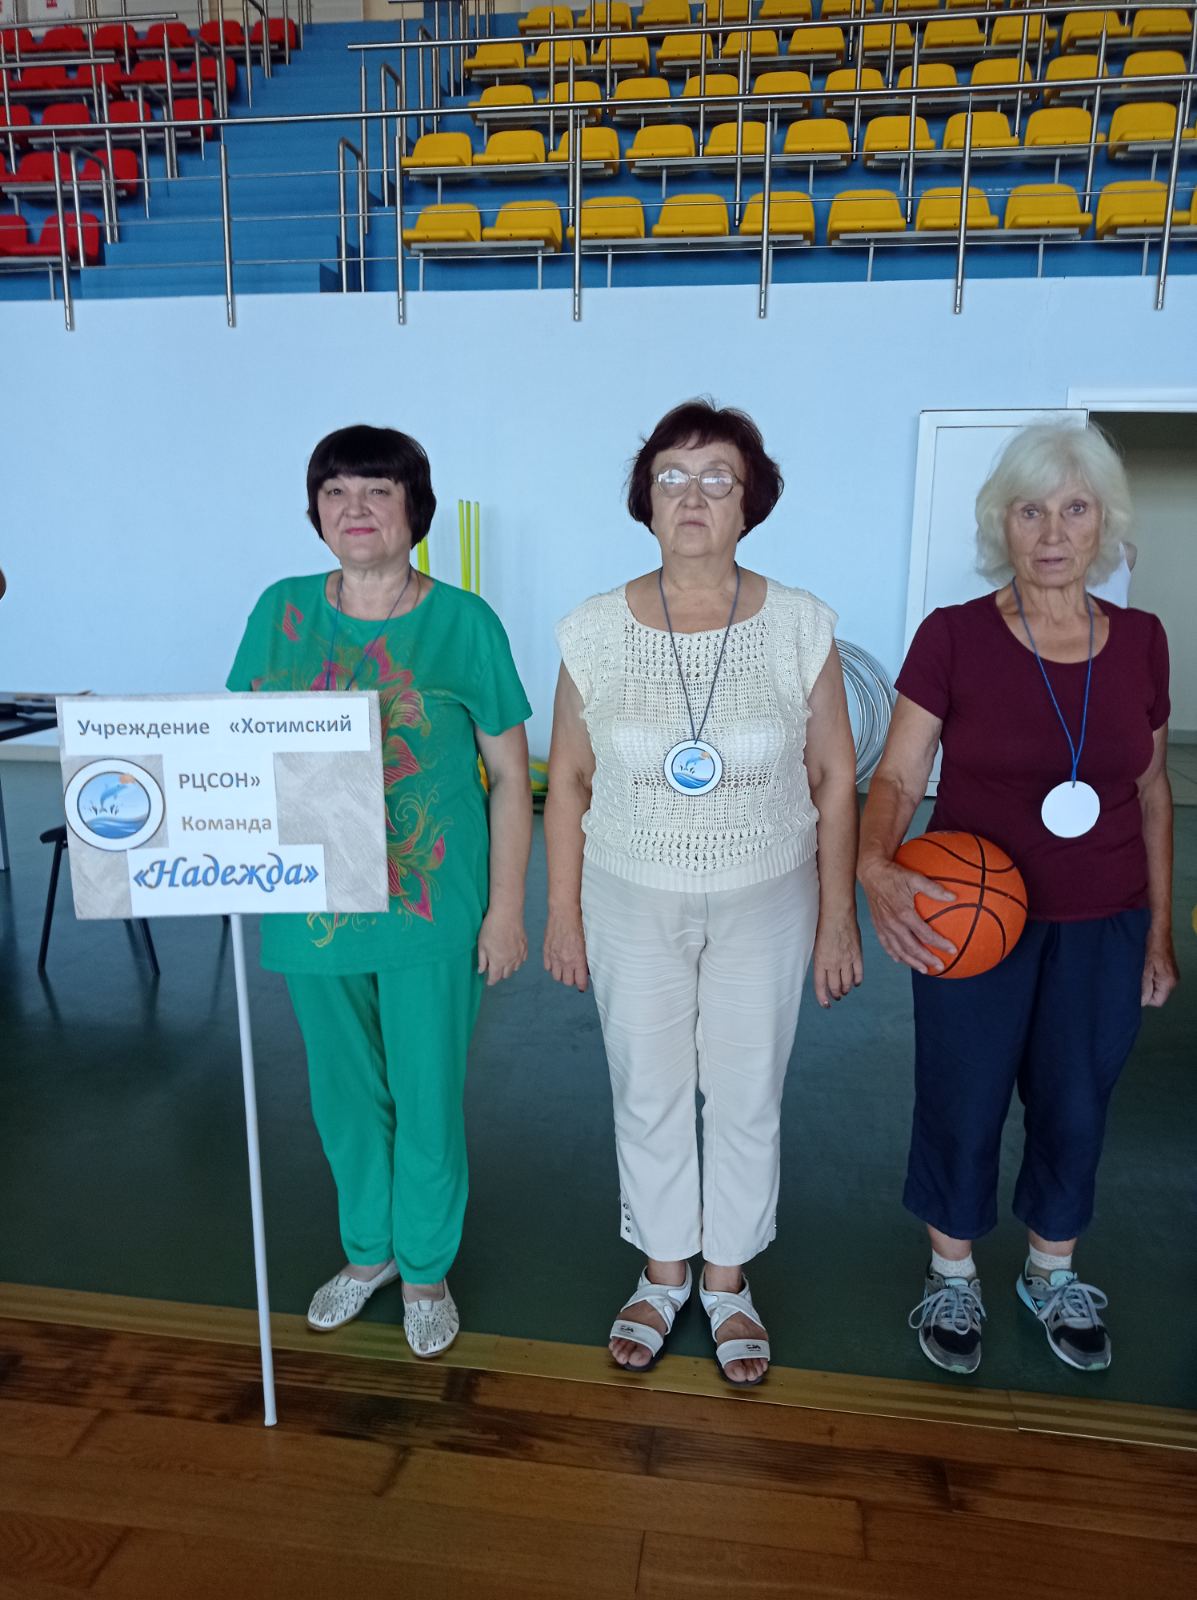 Команда Хотимского района “Надежда” заняла второе место в зональной спартакиаде “За активное долголетие”